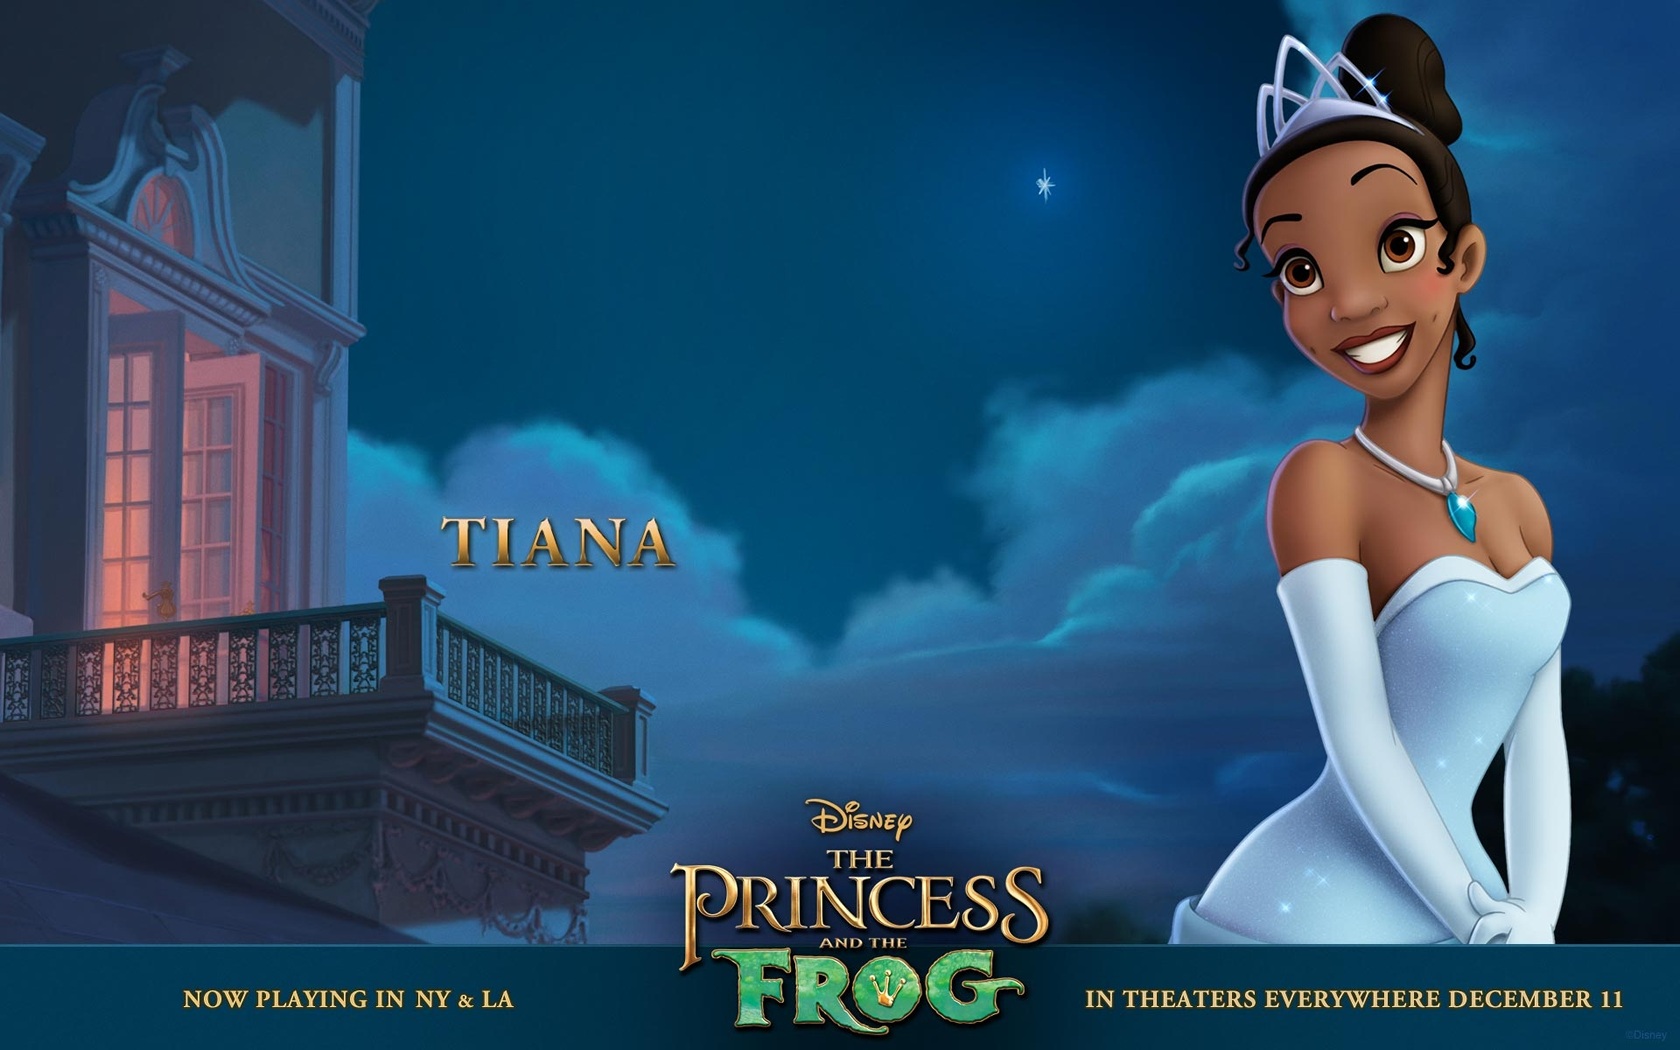 "The Princess and the Frog: Tiana" desktop wallpaper (1680 x 1050 pixels)